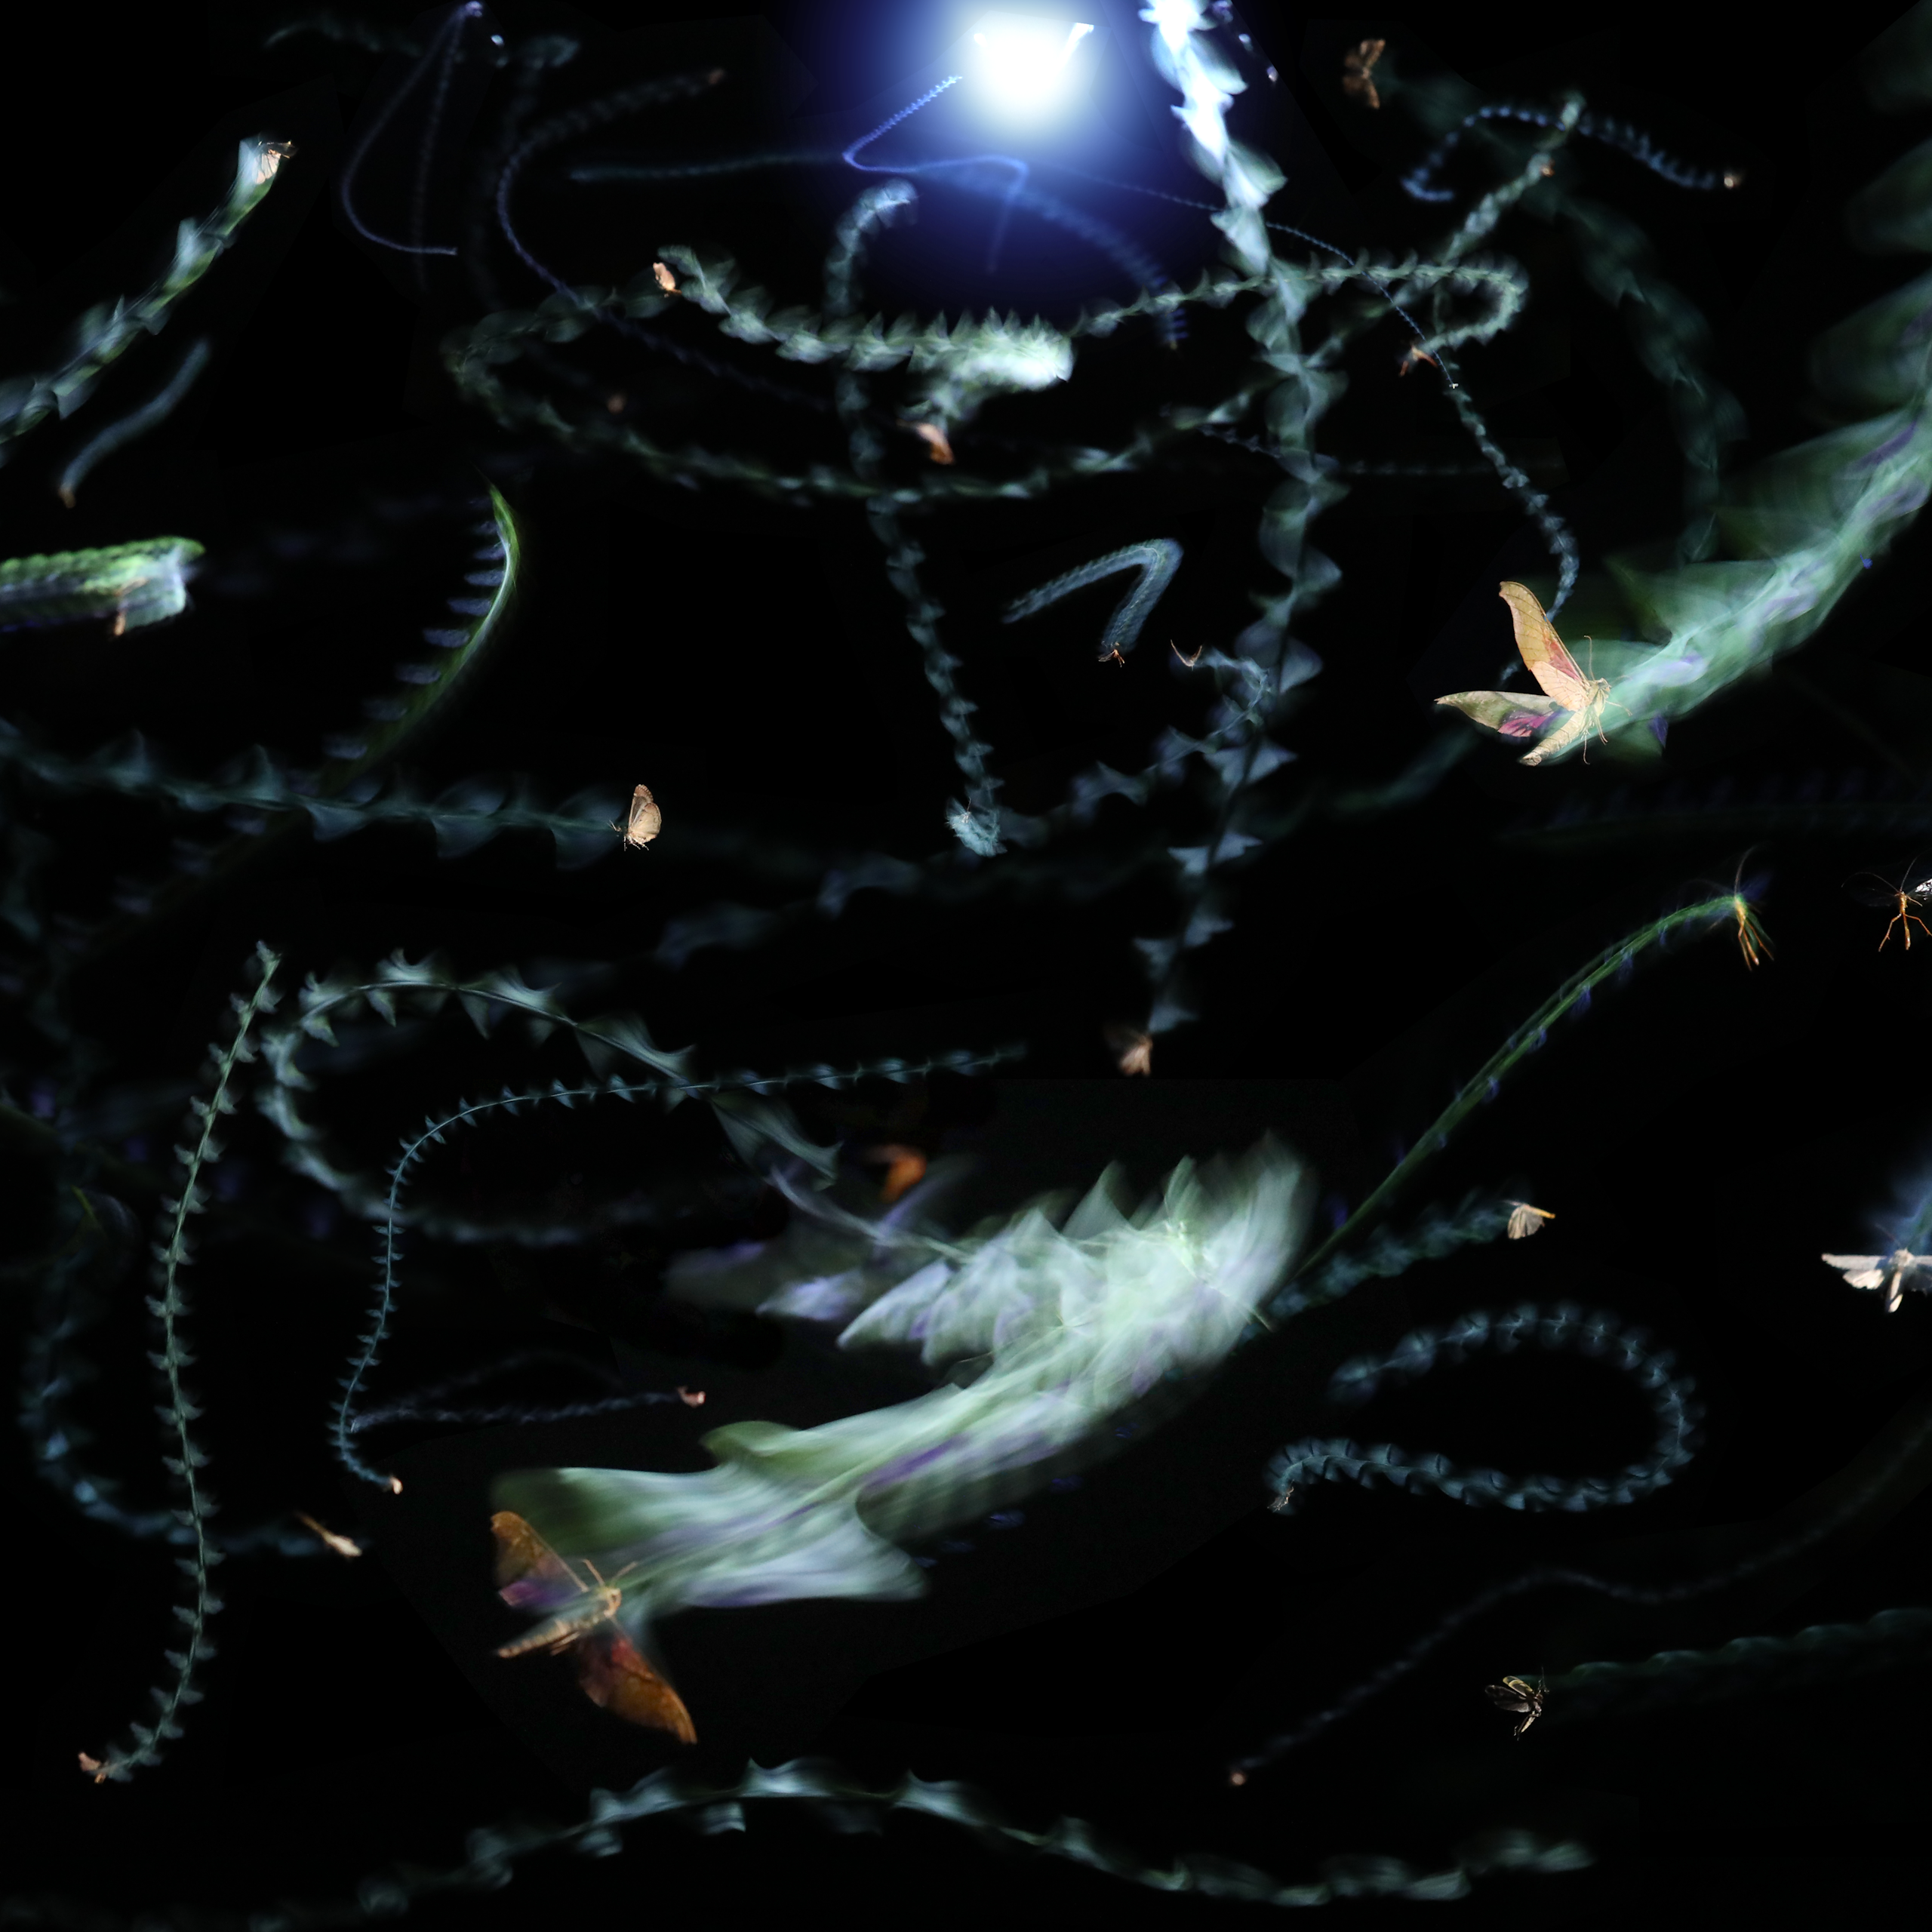 Insectos voladores dejan estelas de luz sobre un fondo oscuro